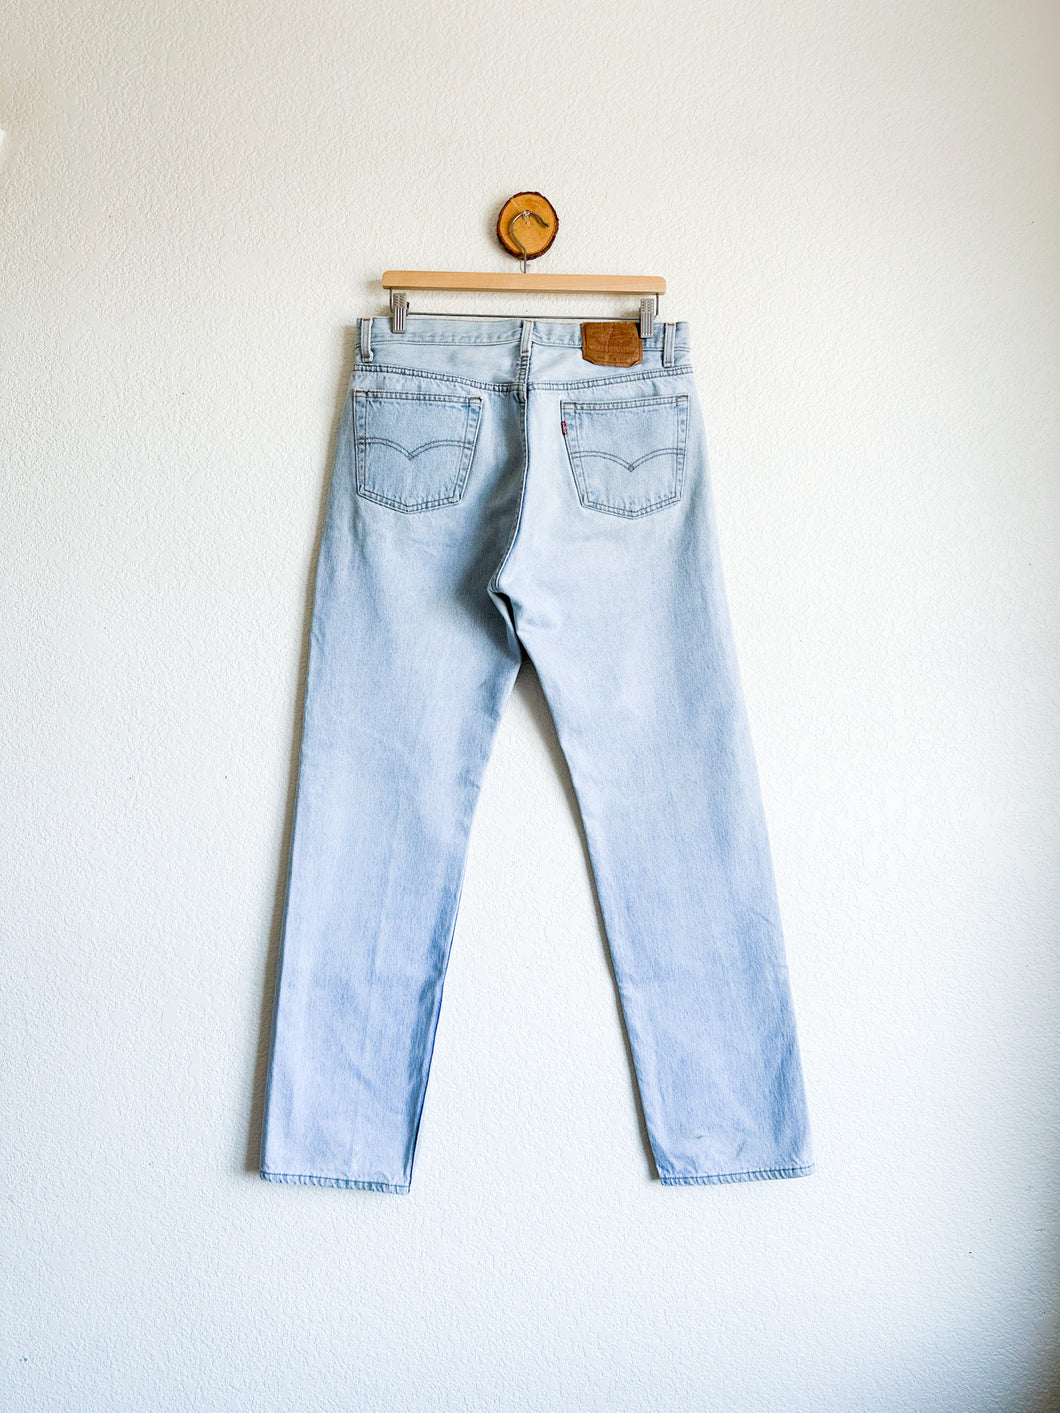 Vintage Levi's 501 Jeans - 33